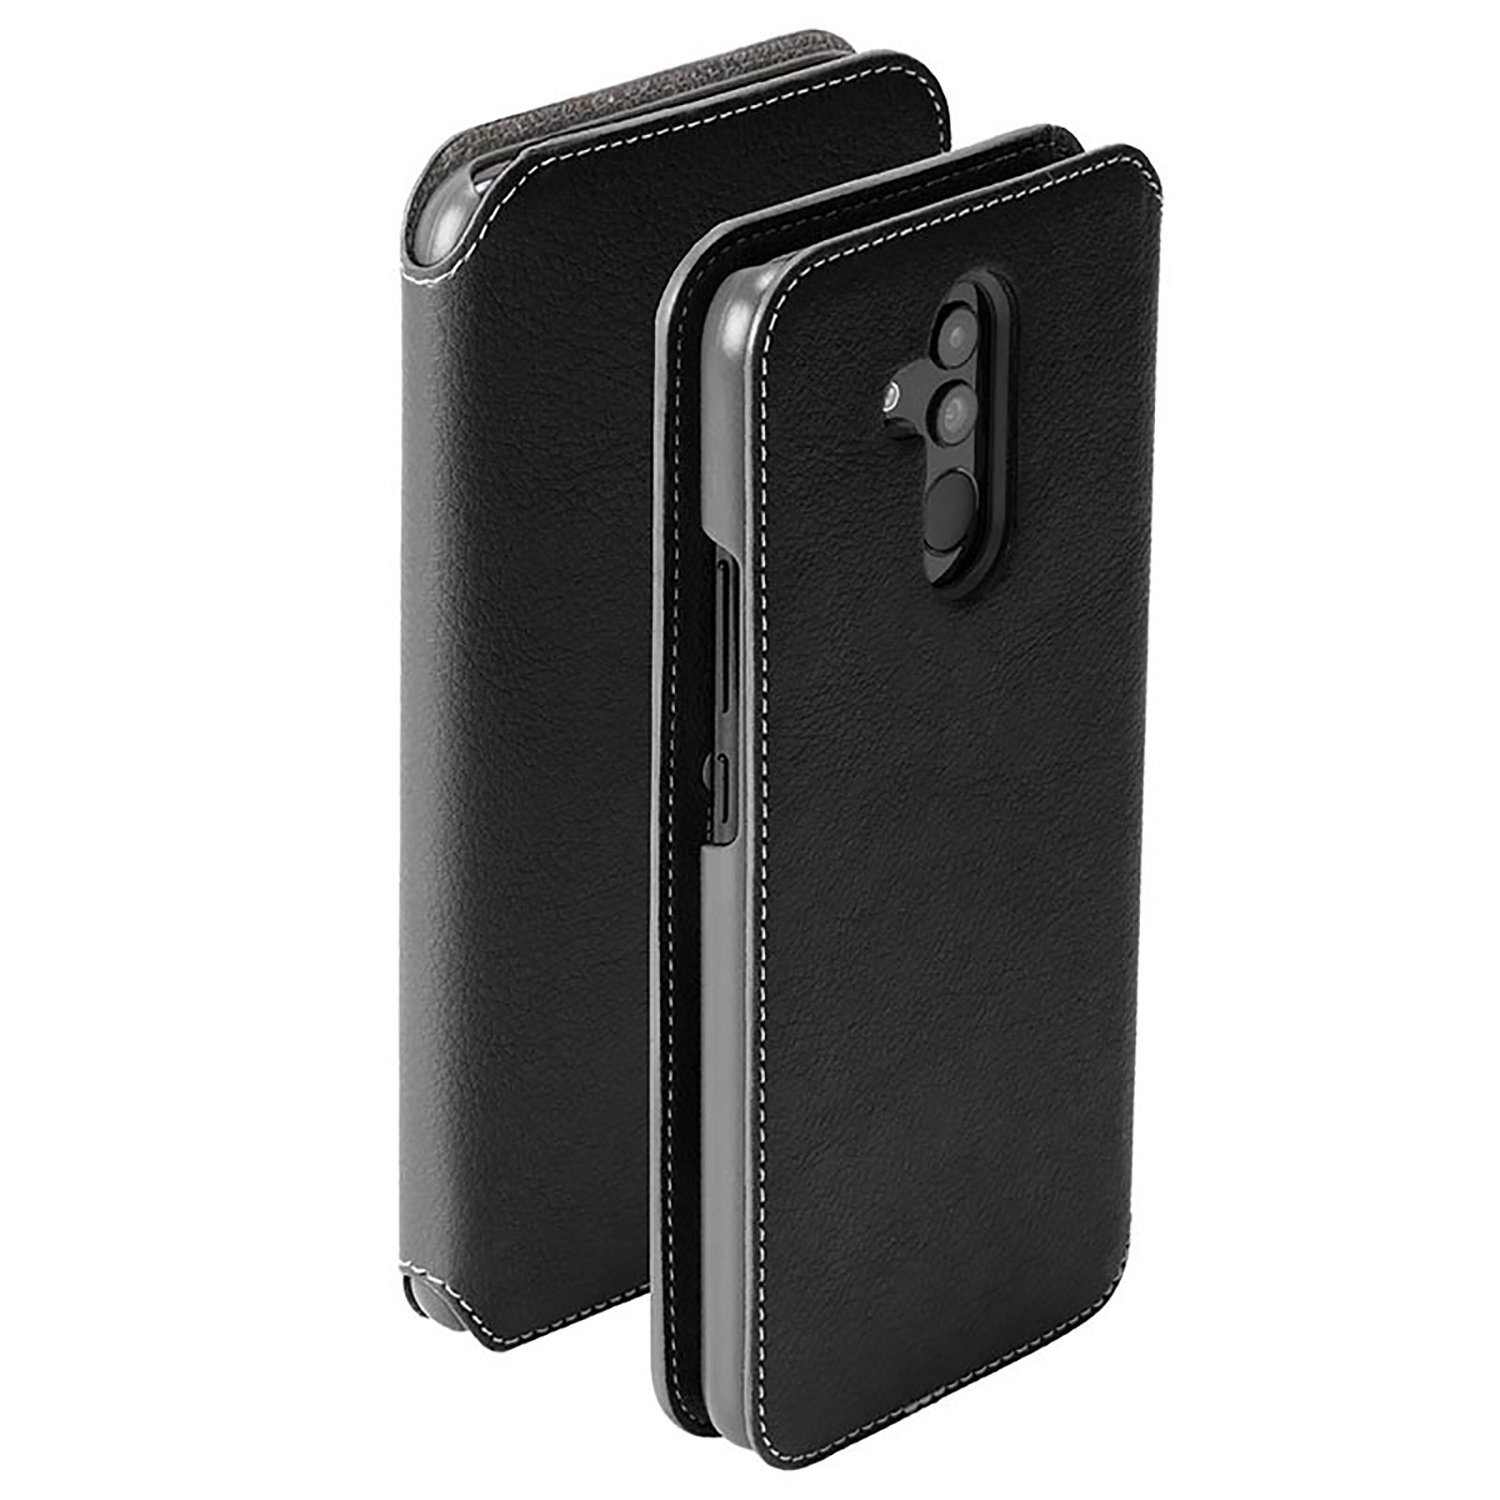 Krusell Pixbo Huawei Mate 20 Lite Slim 4 Card Wallet Case - Black